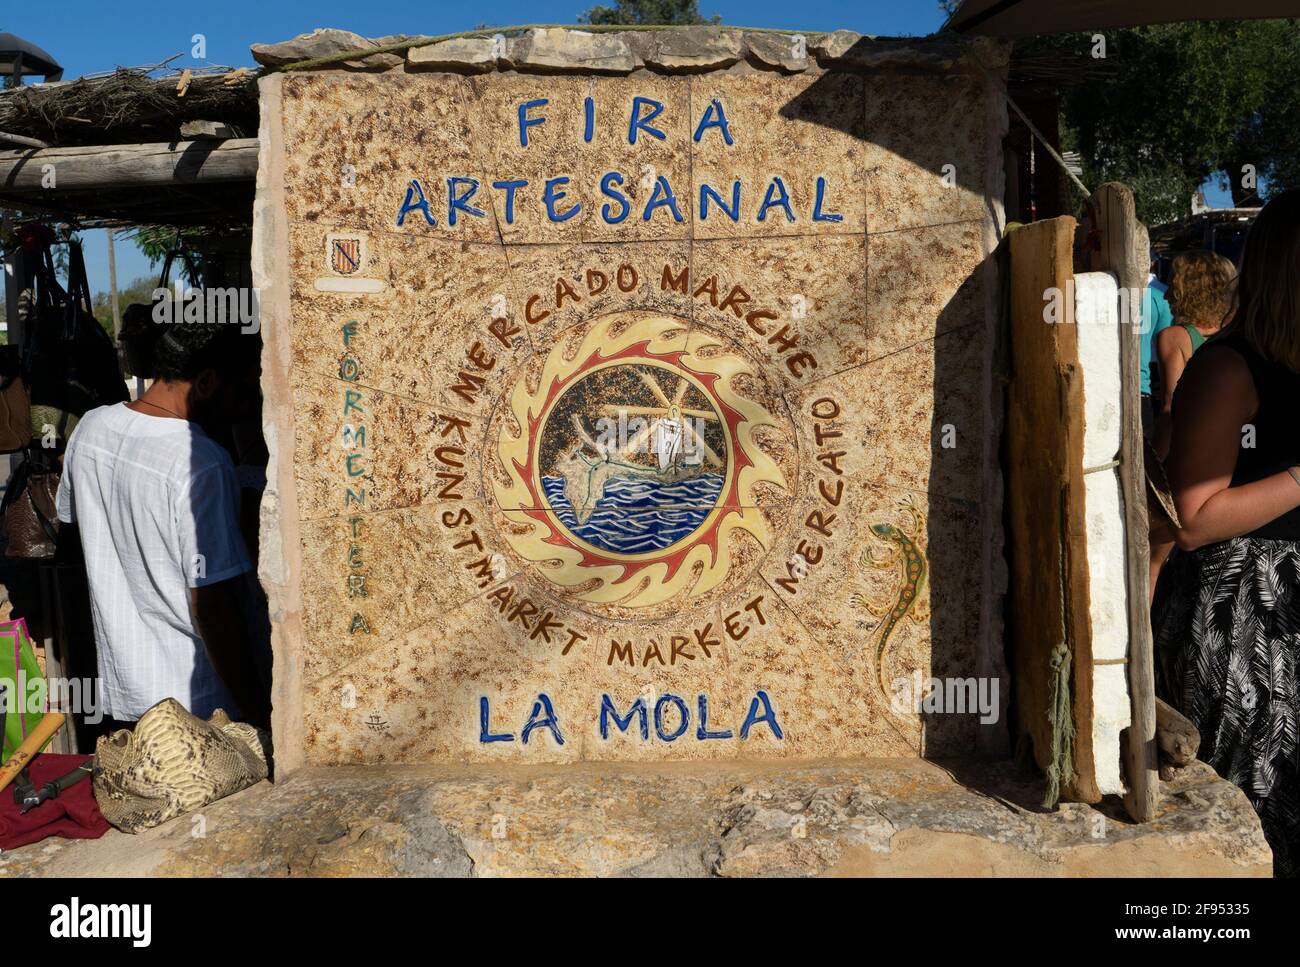 Das Steinzeichen und Symbol des Hippiemarktes in Pilar de Mola auf der Insel Formentera in Spanien. Text „ Craft Market la Mola“. Stockfoto